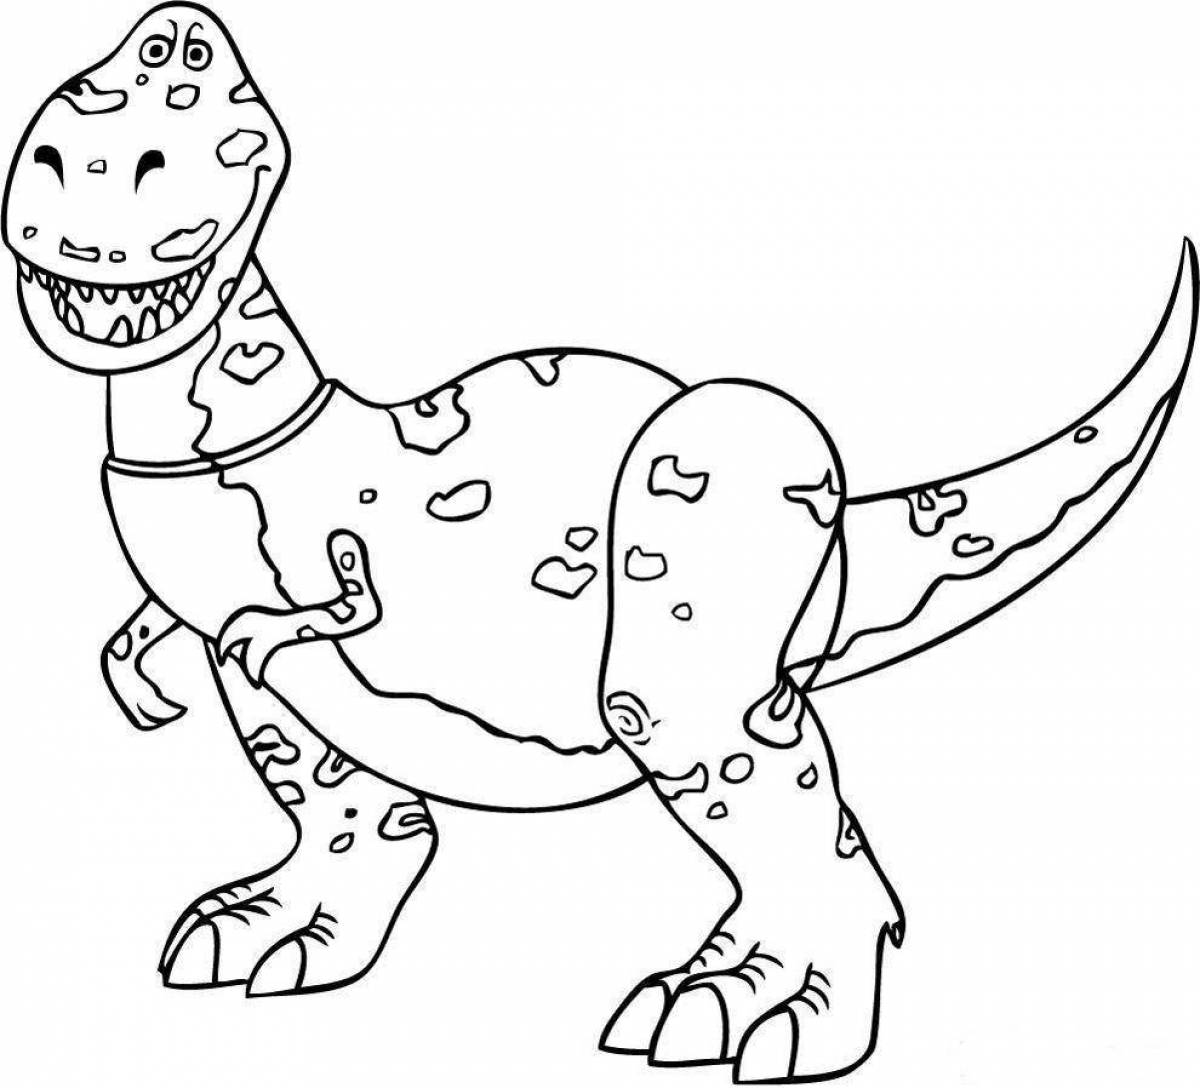 Великолепная раскраска тарбозавр для детей